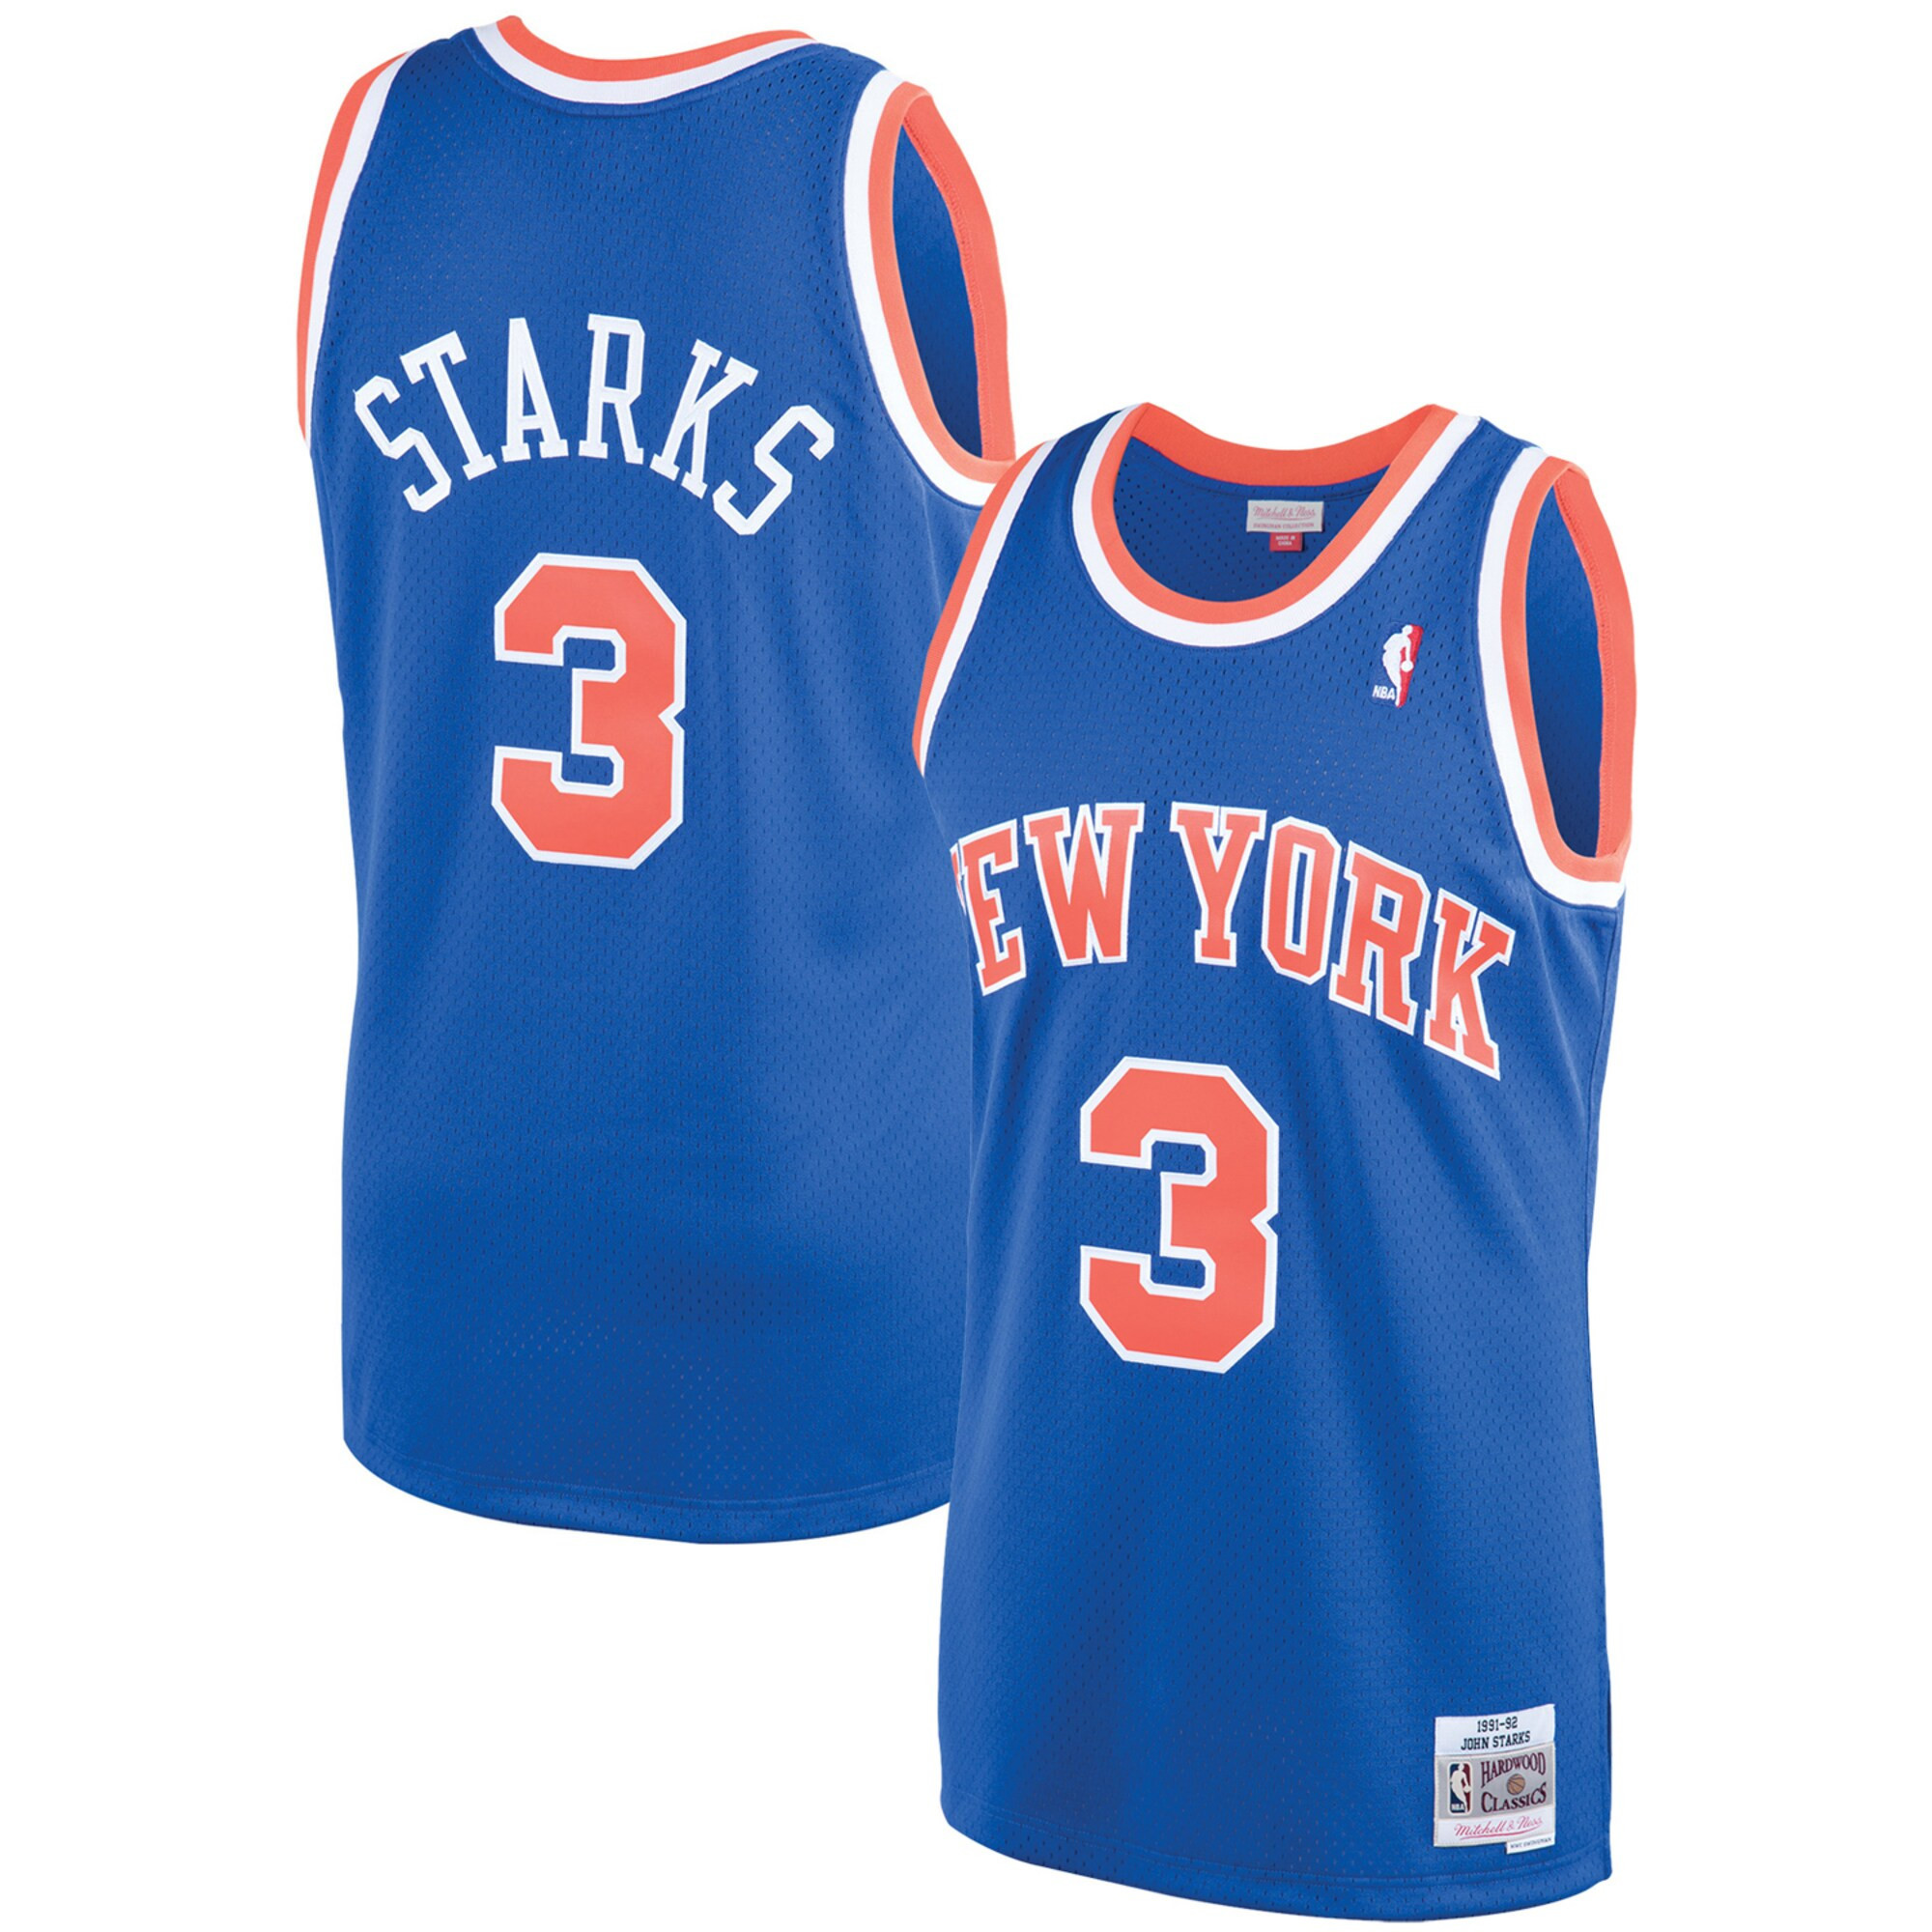 John Starks New York Knicks Blue Jersey - All Stitched